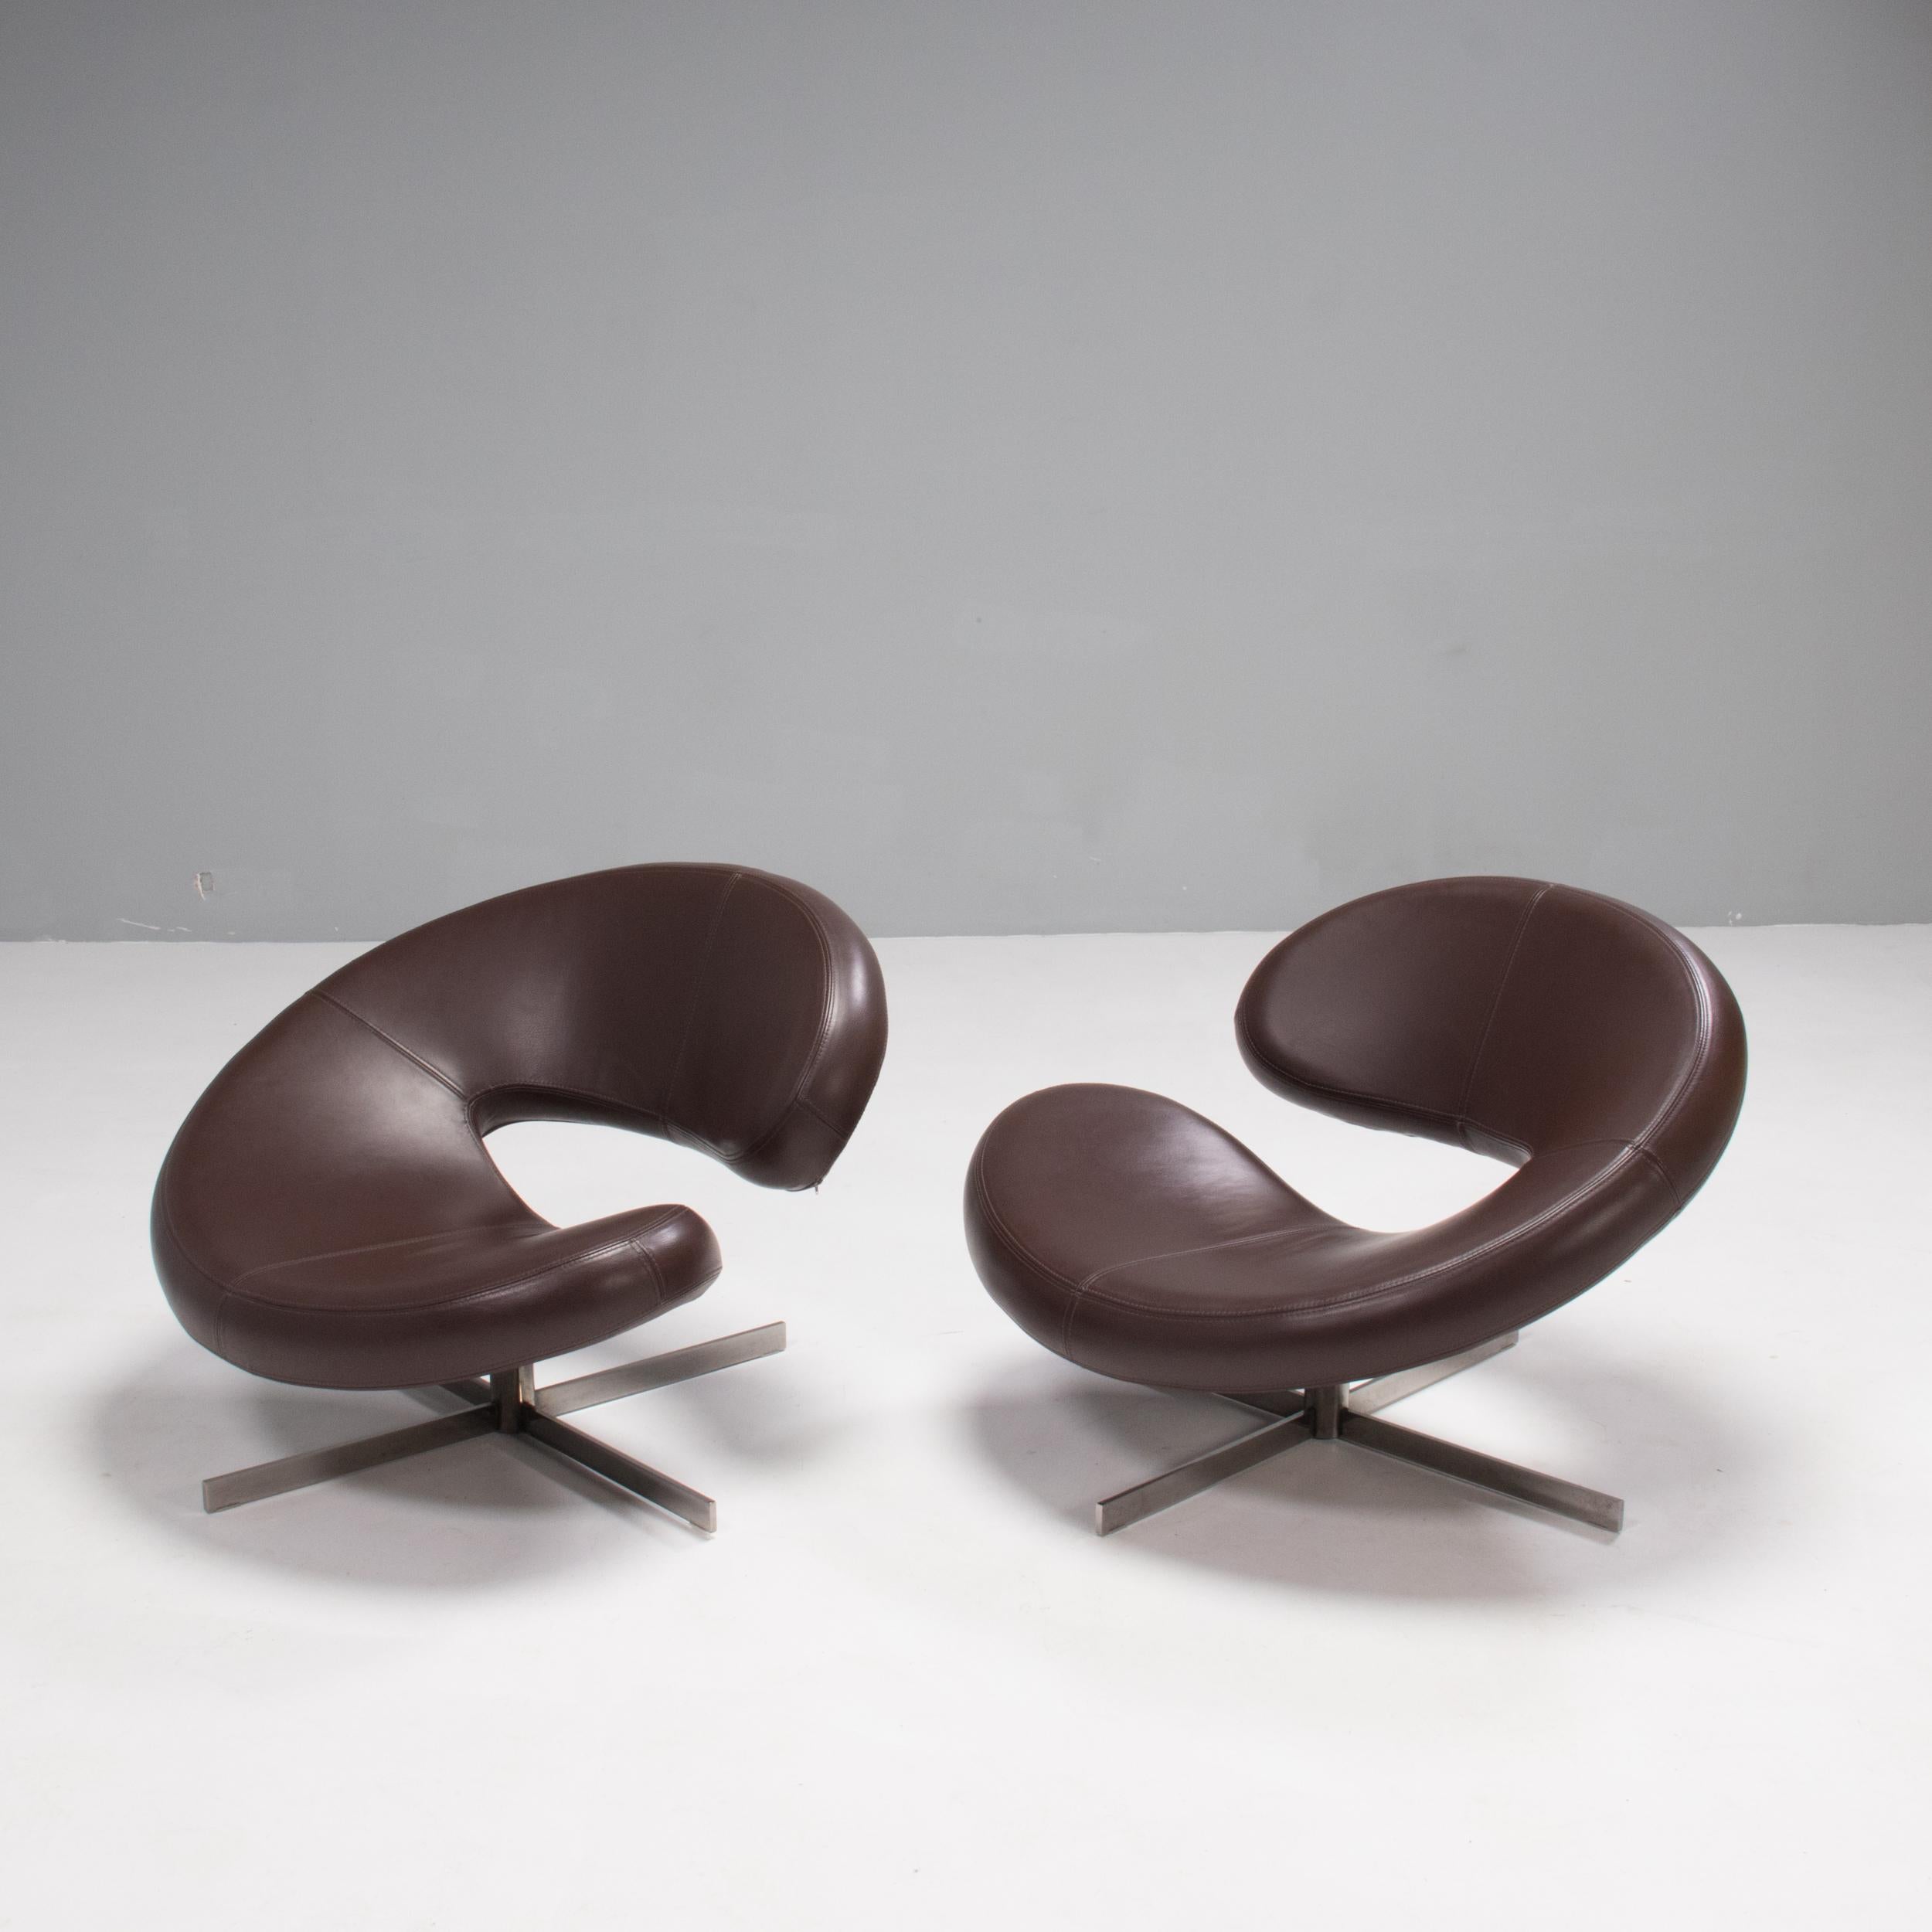 Conçu par Roberto Tapinassi et Maurizio Manzoni pour Roche Bobois, le fauteuil Nuage 2 est un design contemporain immédiatement reconnaissable.

Avec sa silhouette incurvée, la forme crée une assise semblable à un cocon, entièrement recouverte de